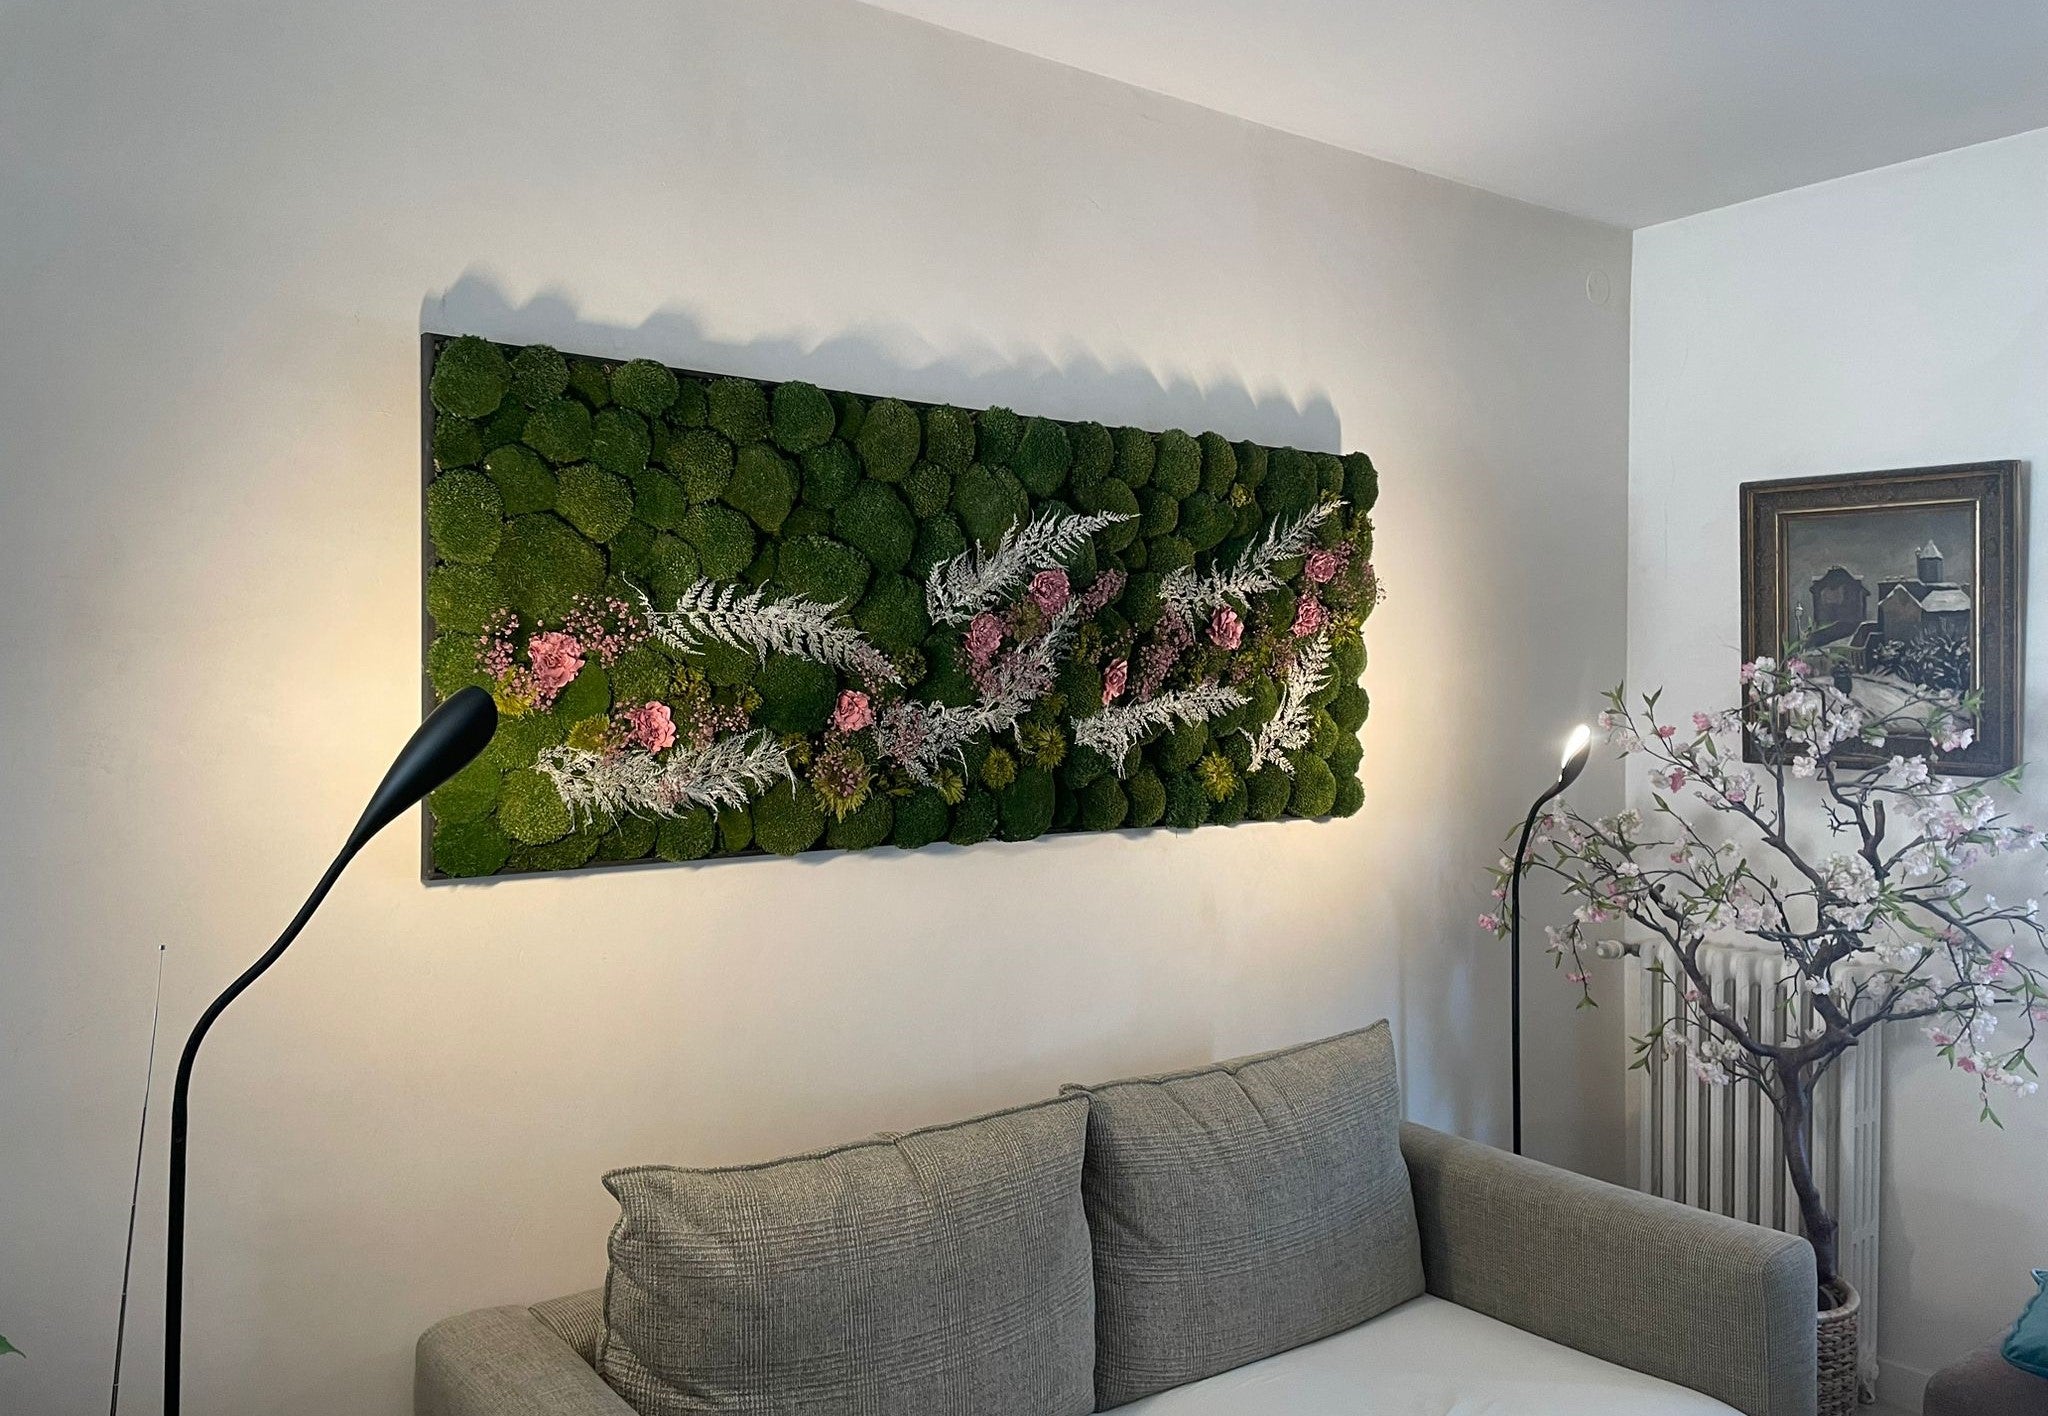 Tableau en végétaux stabilisé dans un salon modern avec un canapé gris et deux lumières design. Le tableau est composé de mousse verte naturel et de fleurs colorés et de fougères blanches.